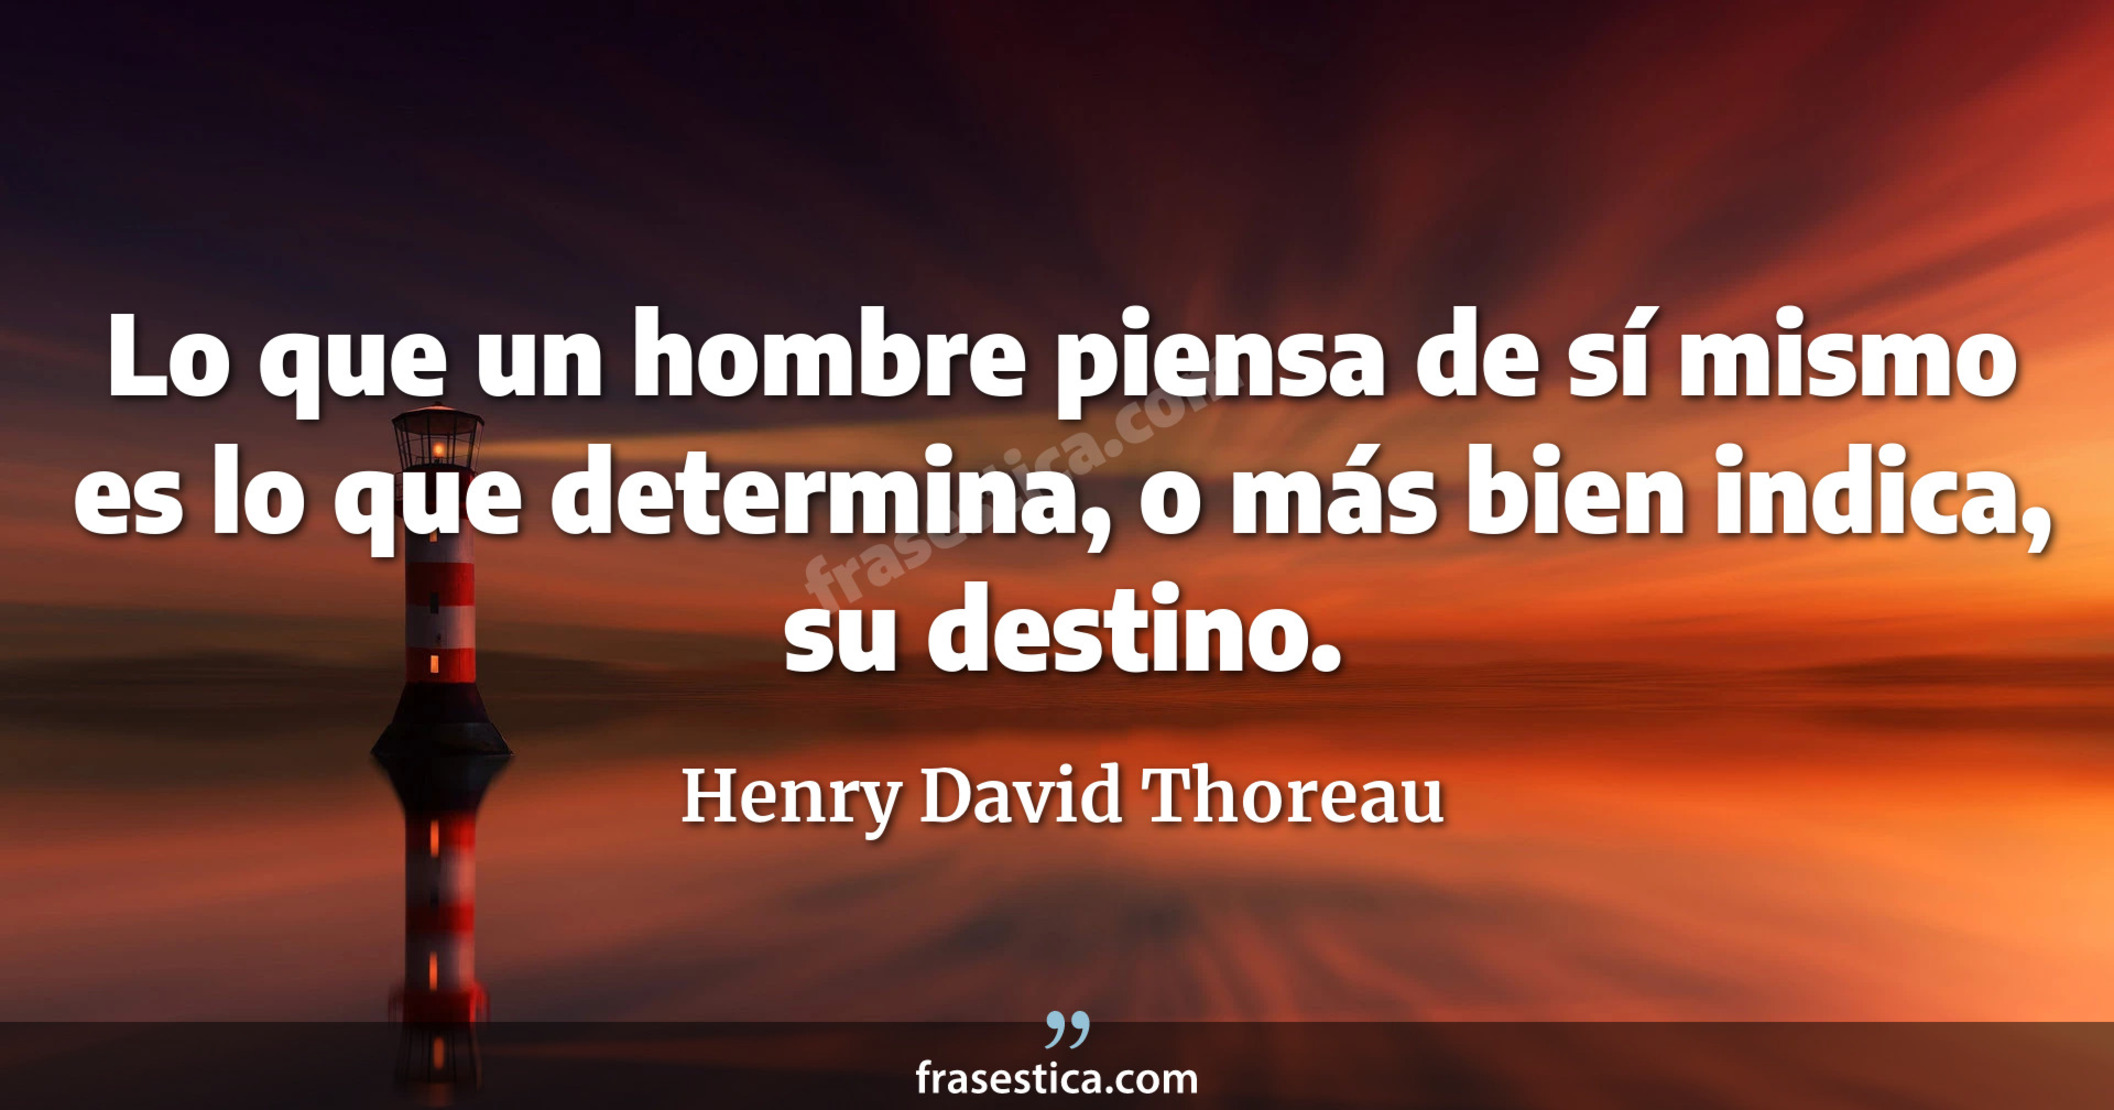 Lo que un hombre piensa de sí mismo es lo que determina, o más bien indica, su destino. - Henry David Thoreau